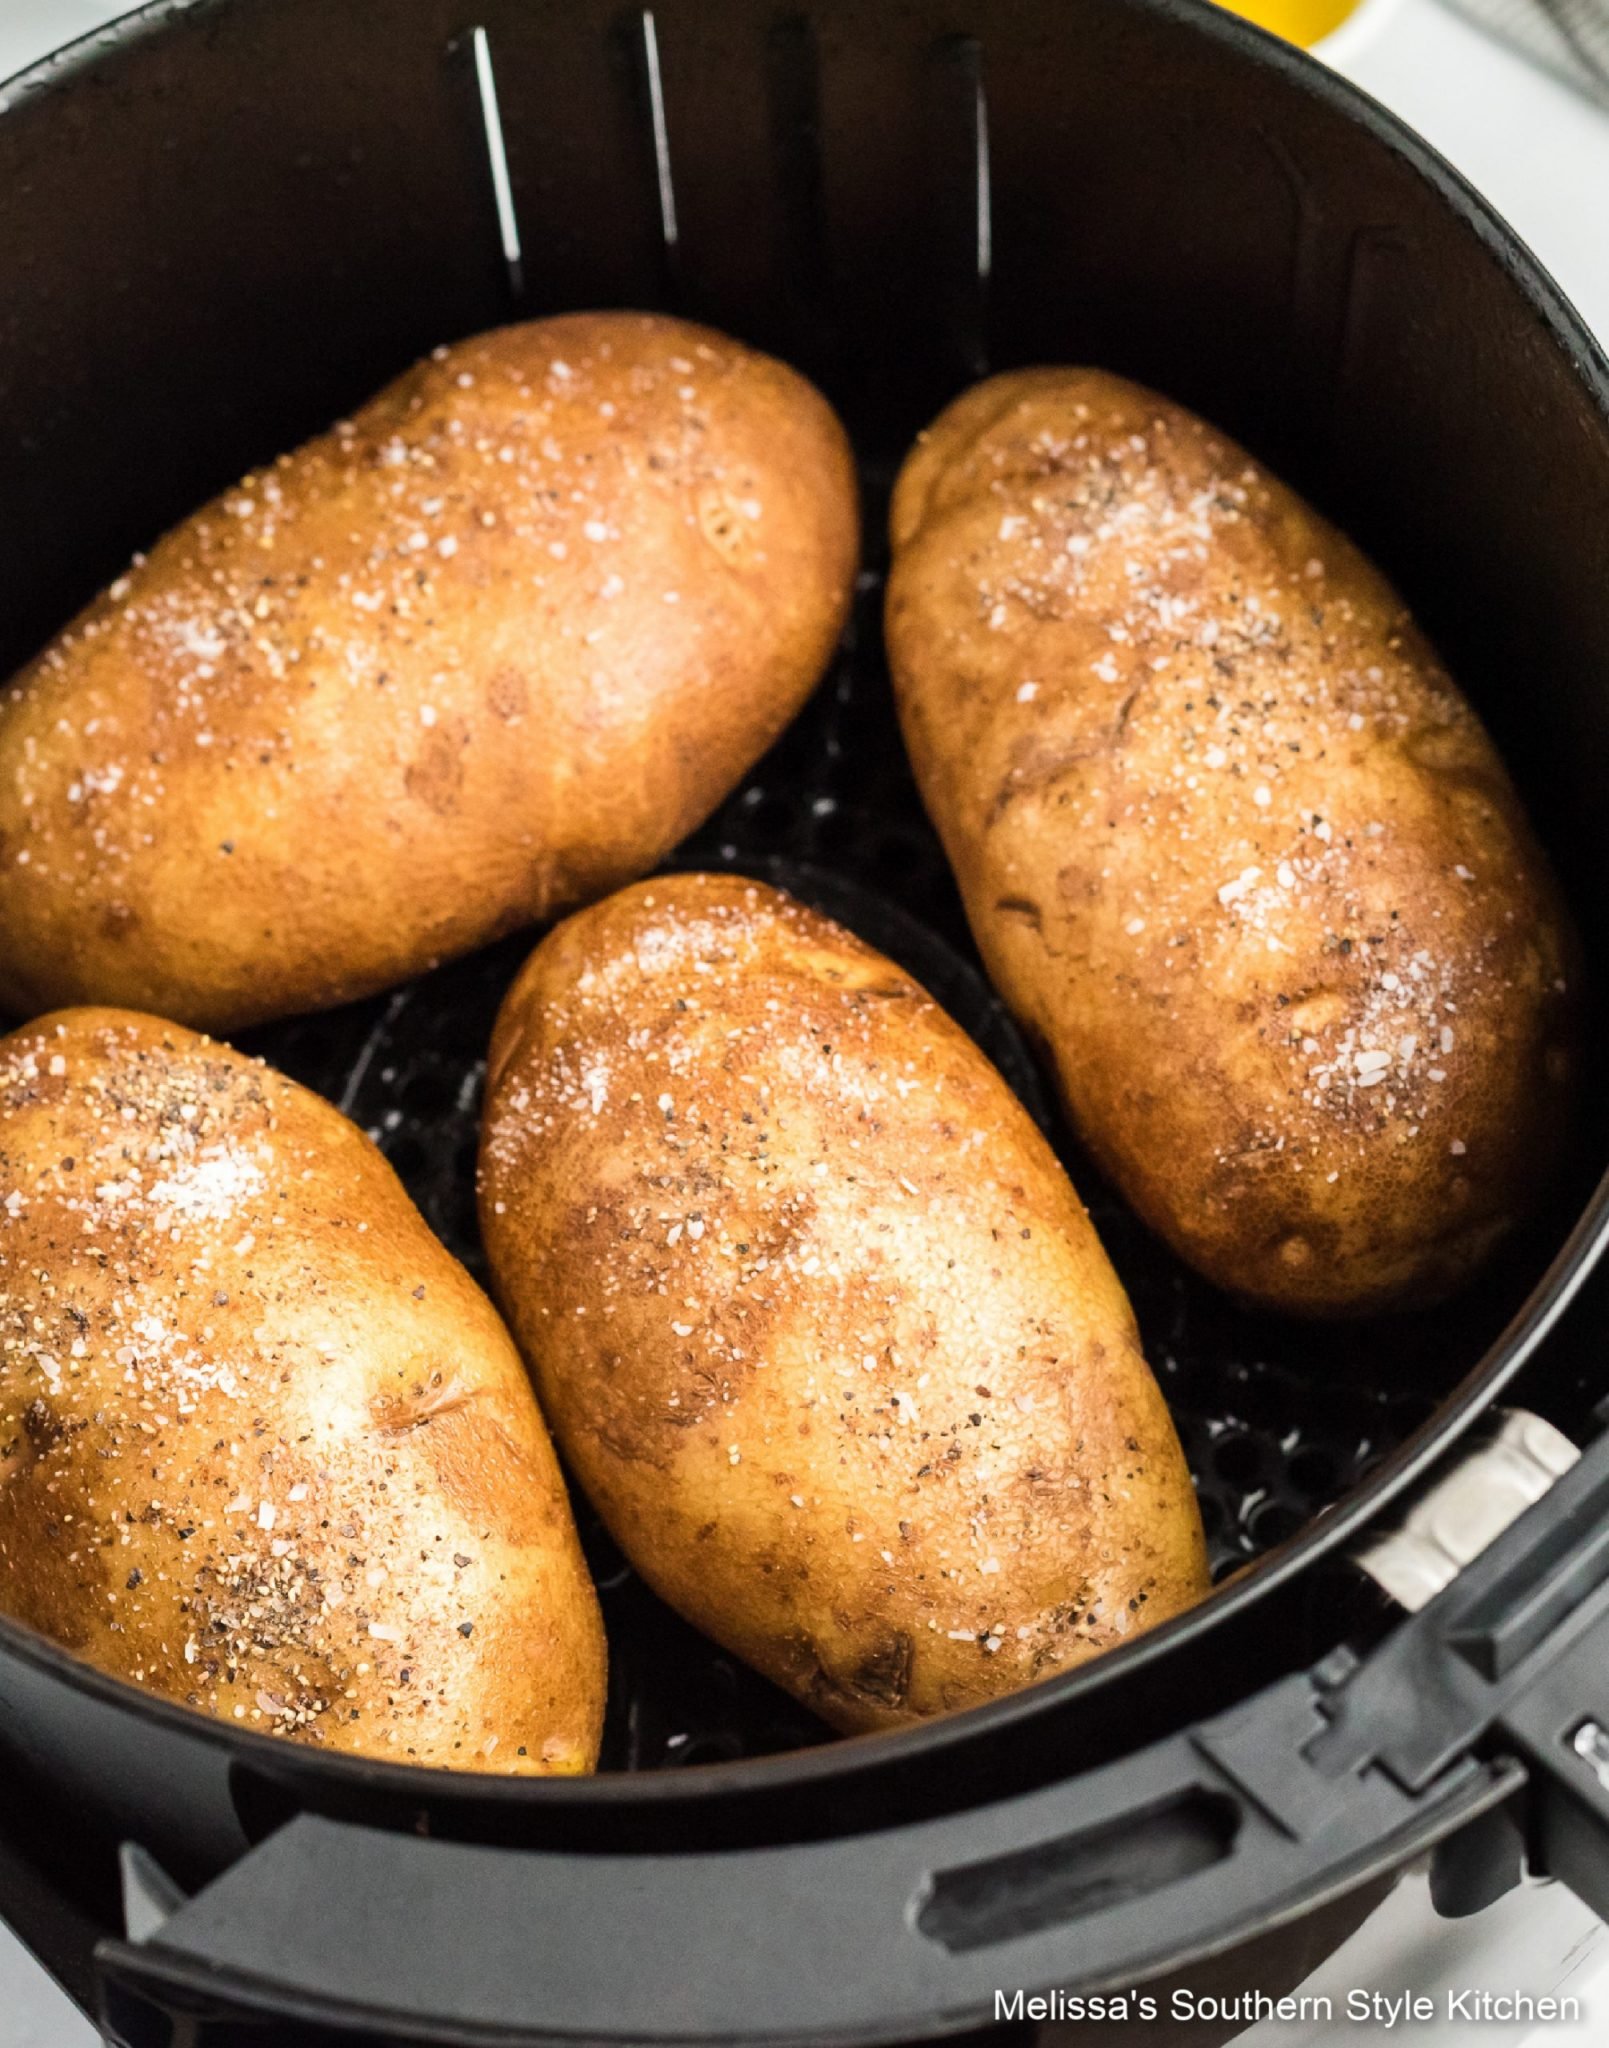 potatoes in an Air Fryer